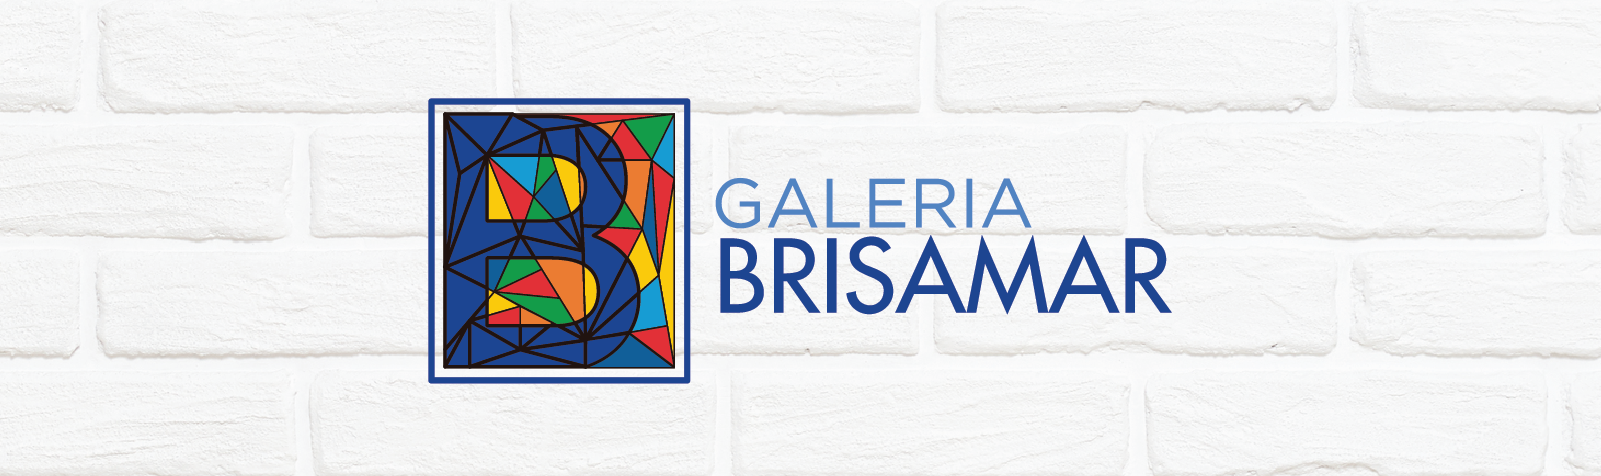 Brisamar Shopping inaugura galeria para exposições artísticas na próxima sexta-feira (21/01)